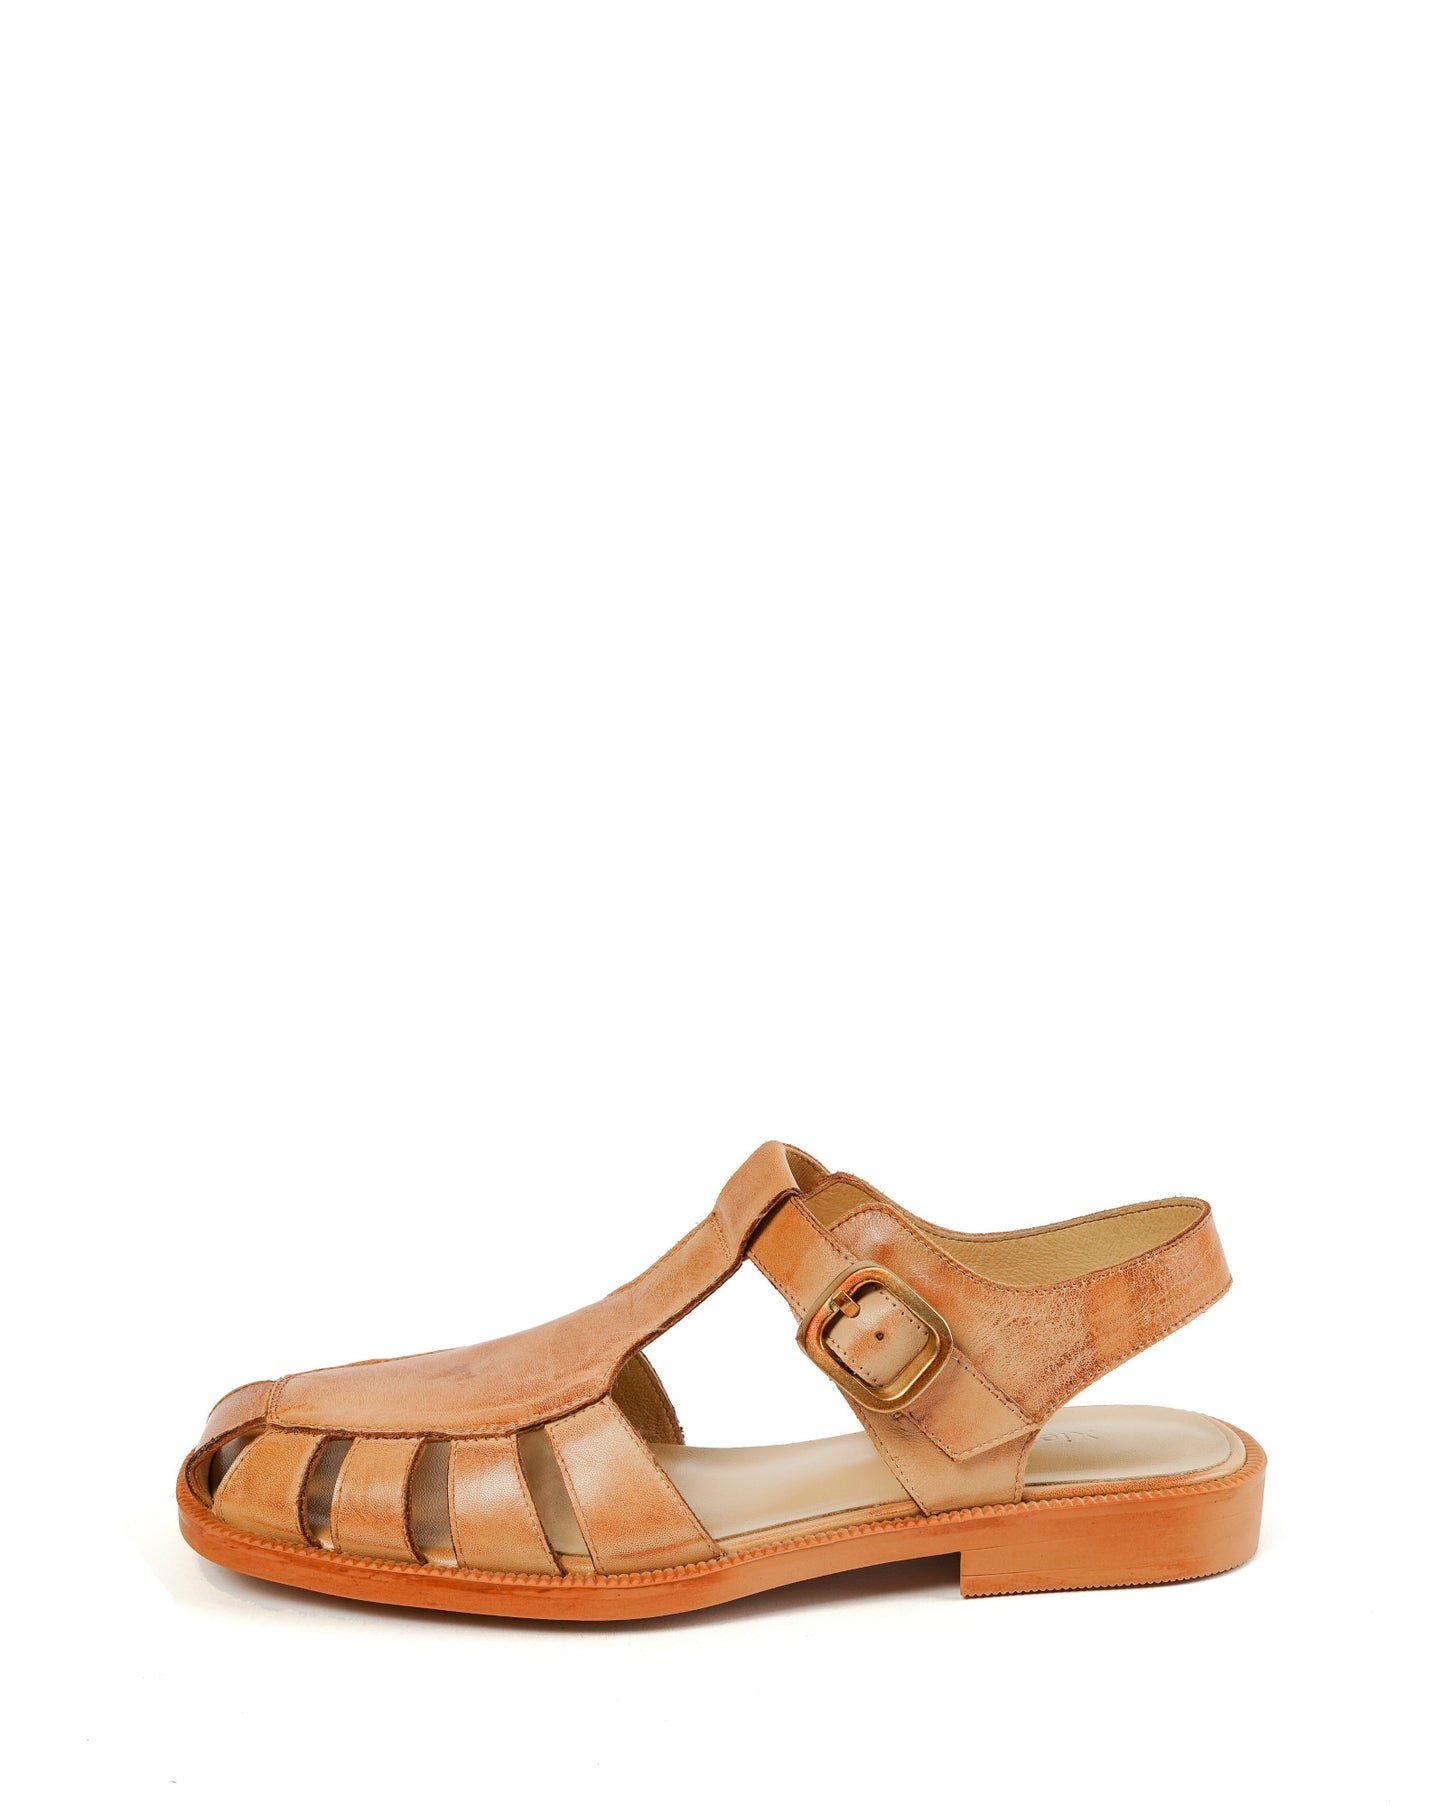 Savana-fisherman-tan-leather-flat-sandals-1